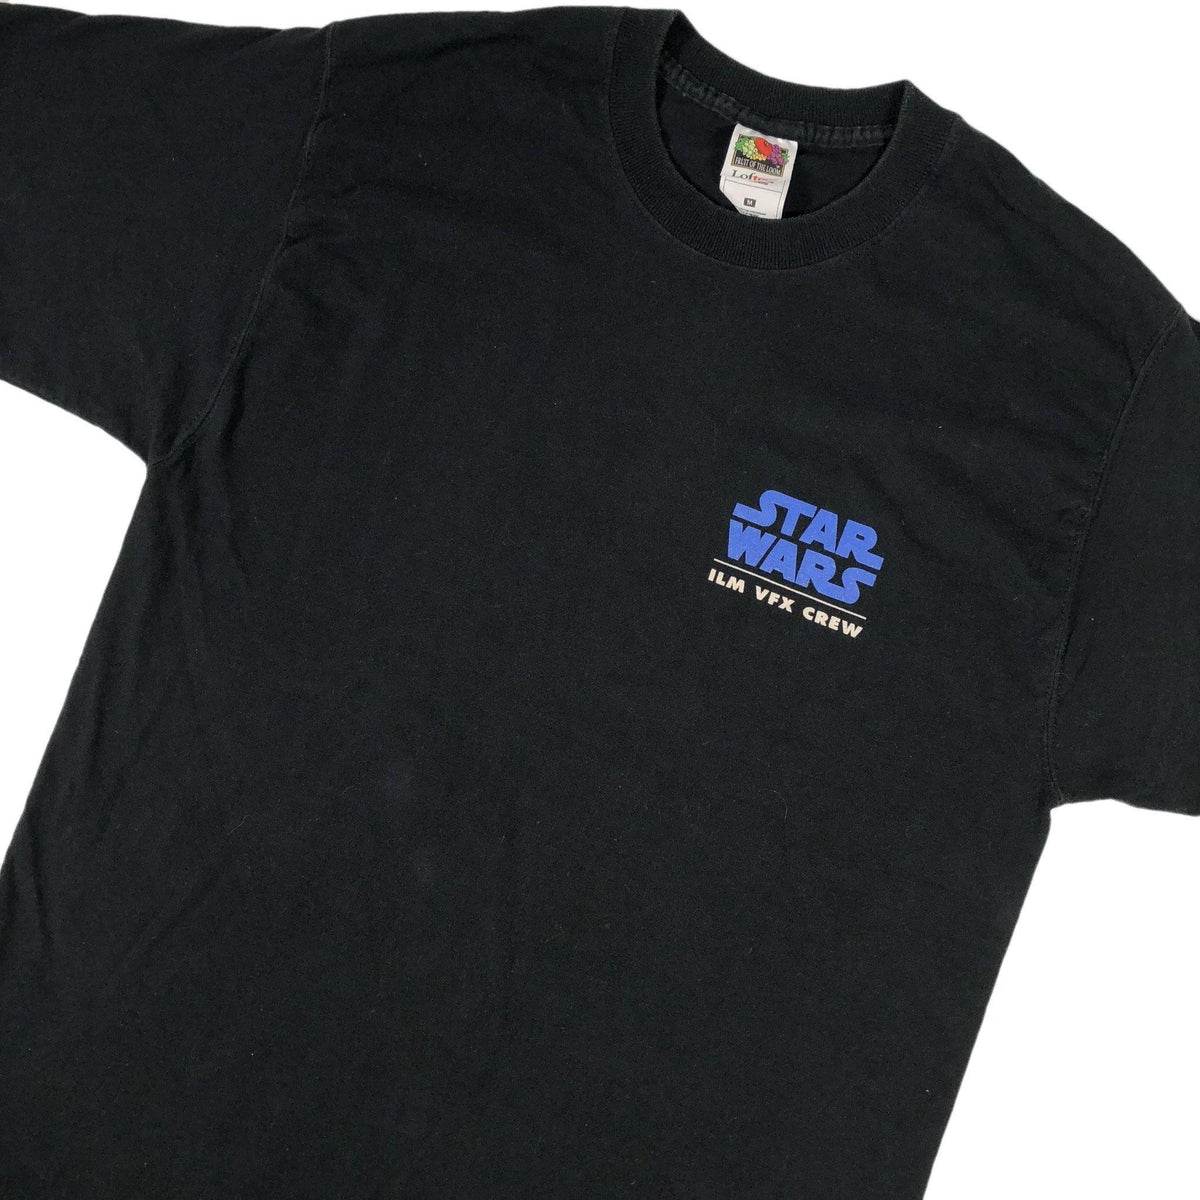 Vintage  Star Wars &quot;Episode I ILM VFX Crew&quot; T-Shirt - jointcustodydc